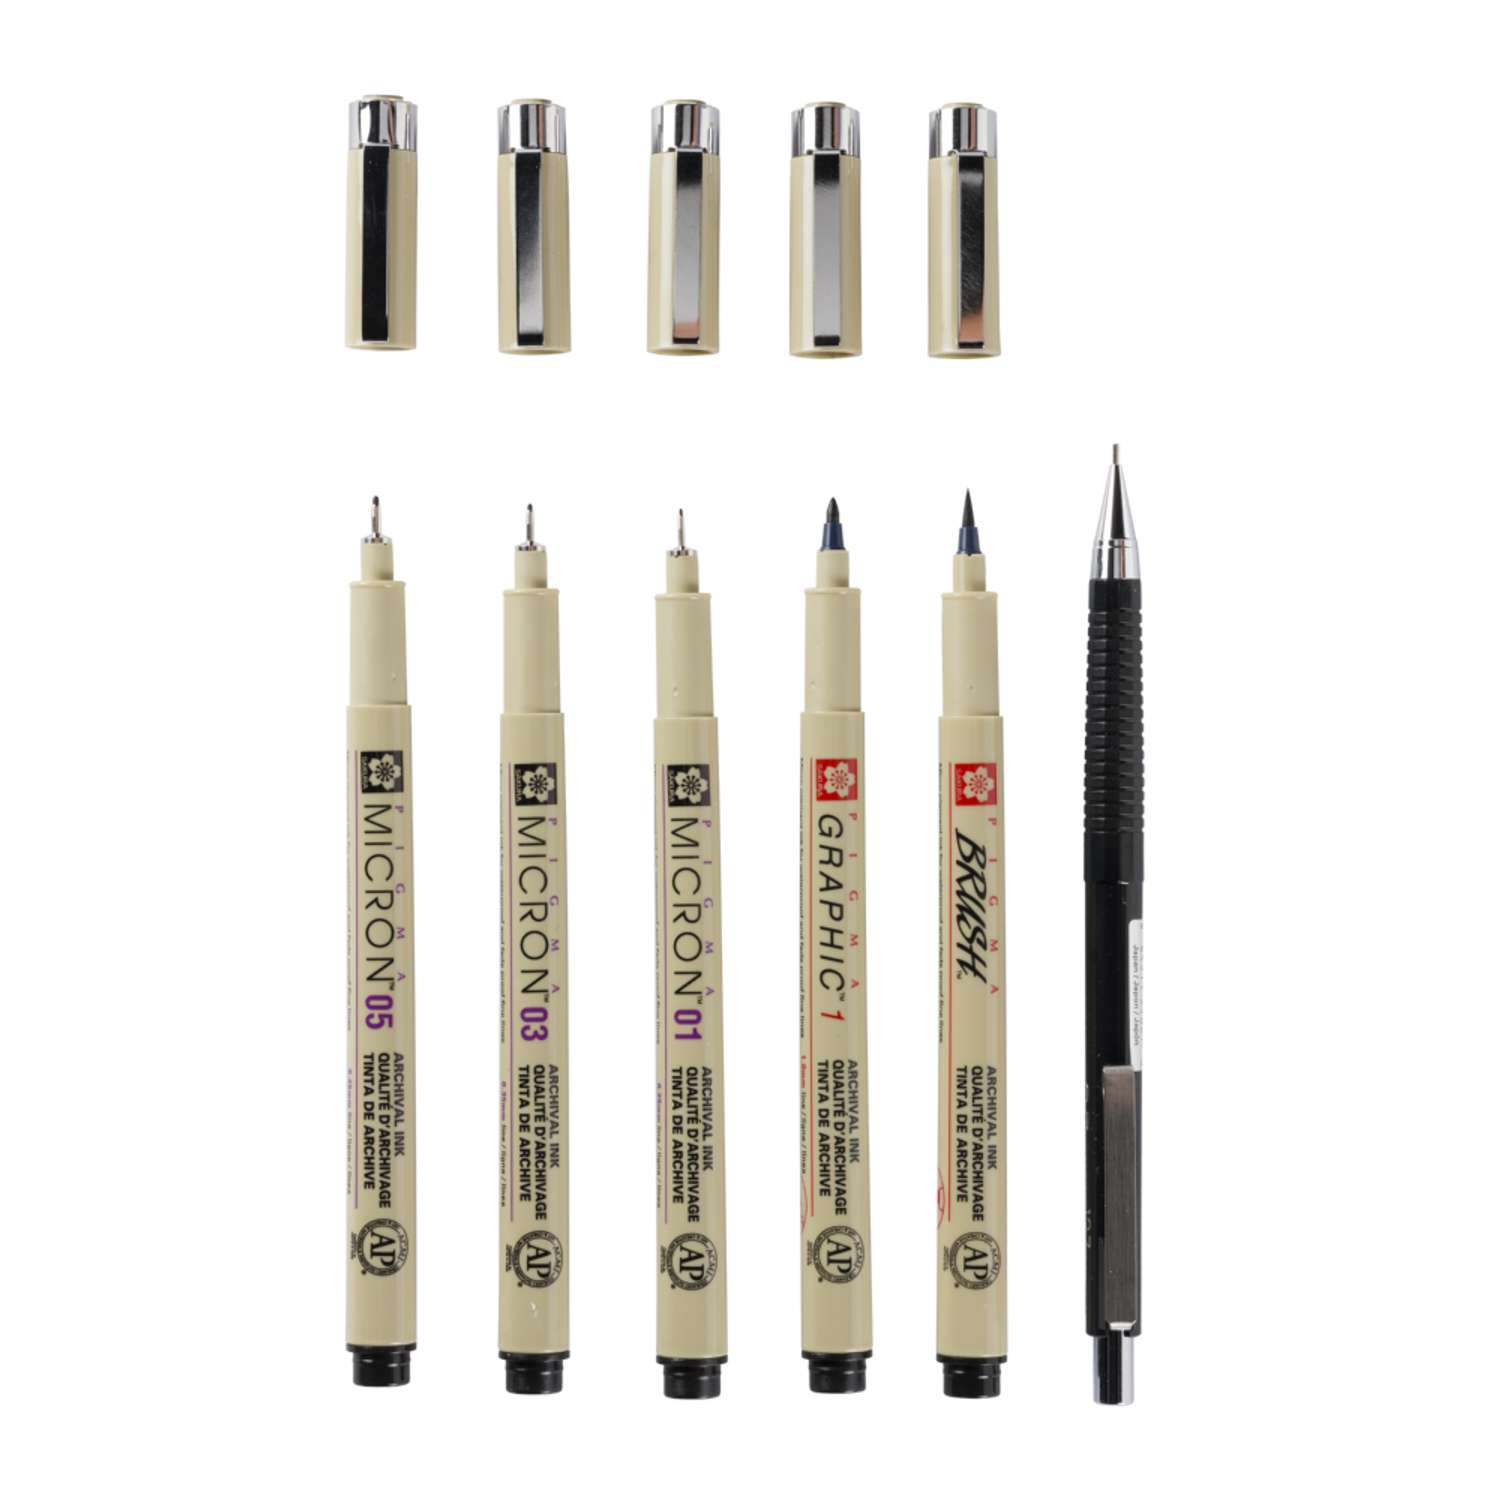 Набор черных капиллярных ручек Sakura Pigma Micron Manga 6 штук brush механический карандаш 0.7мм. - фото 4